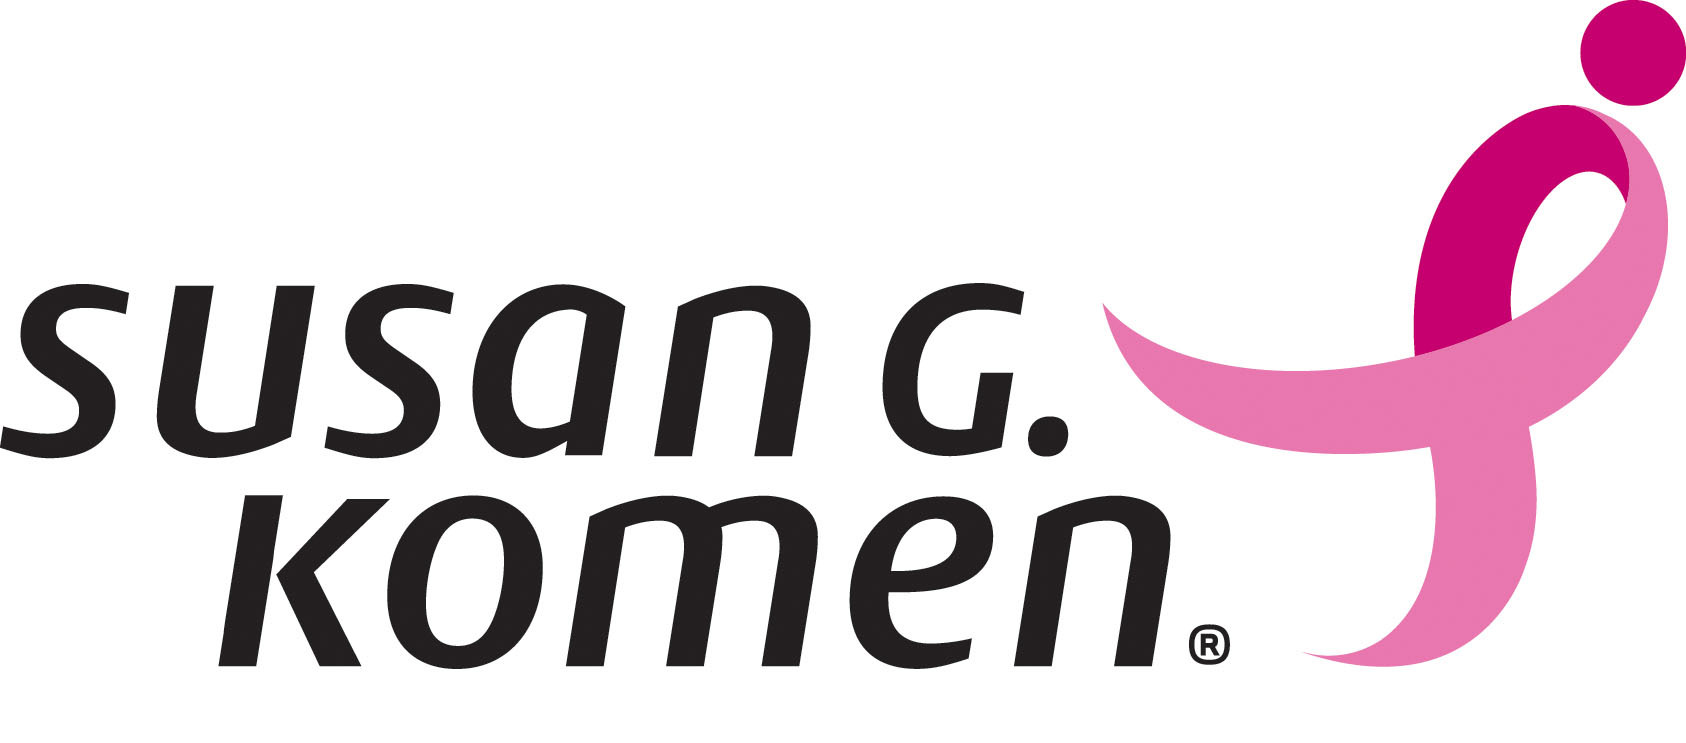 Susan G. Komen logo.